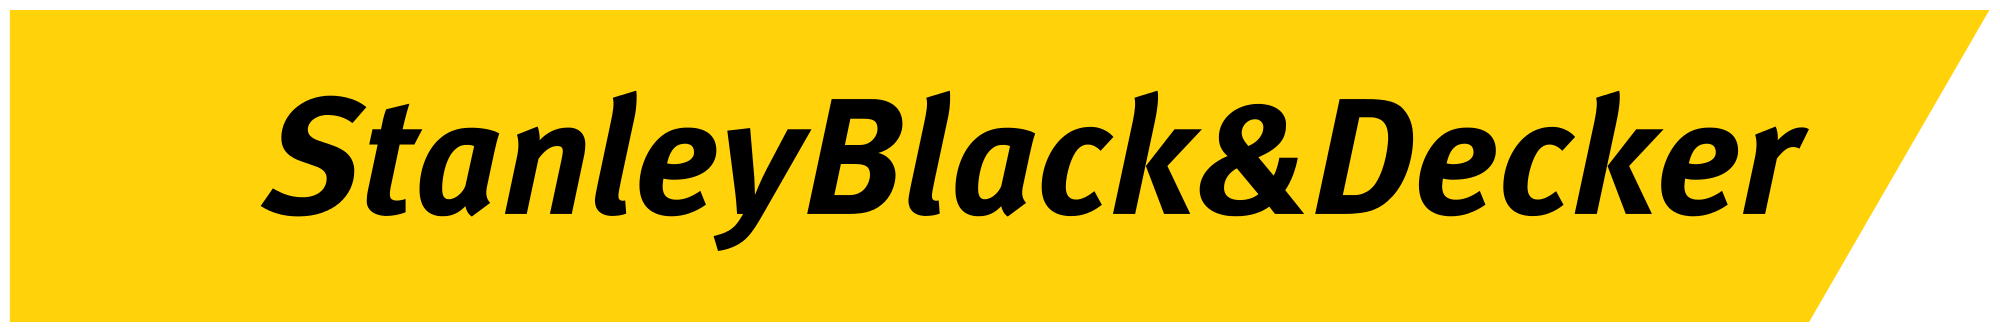 Stanley Black & Decker logo - Links to Stanley Black & Decker